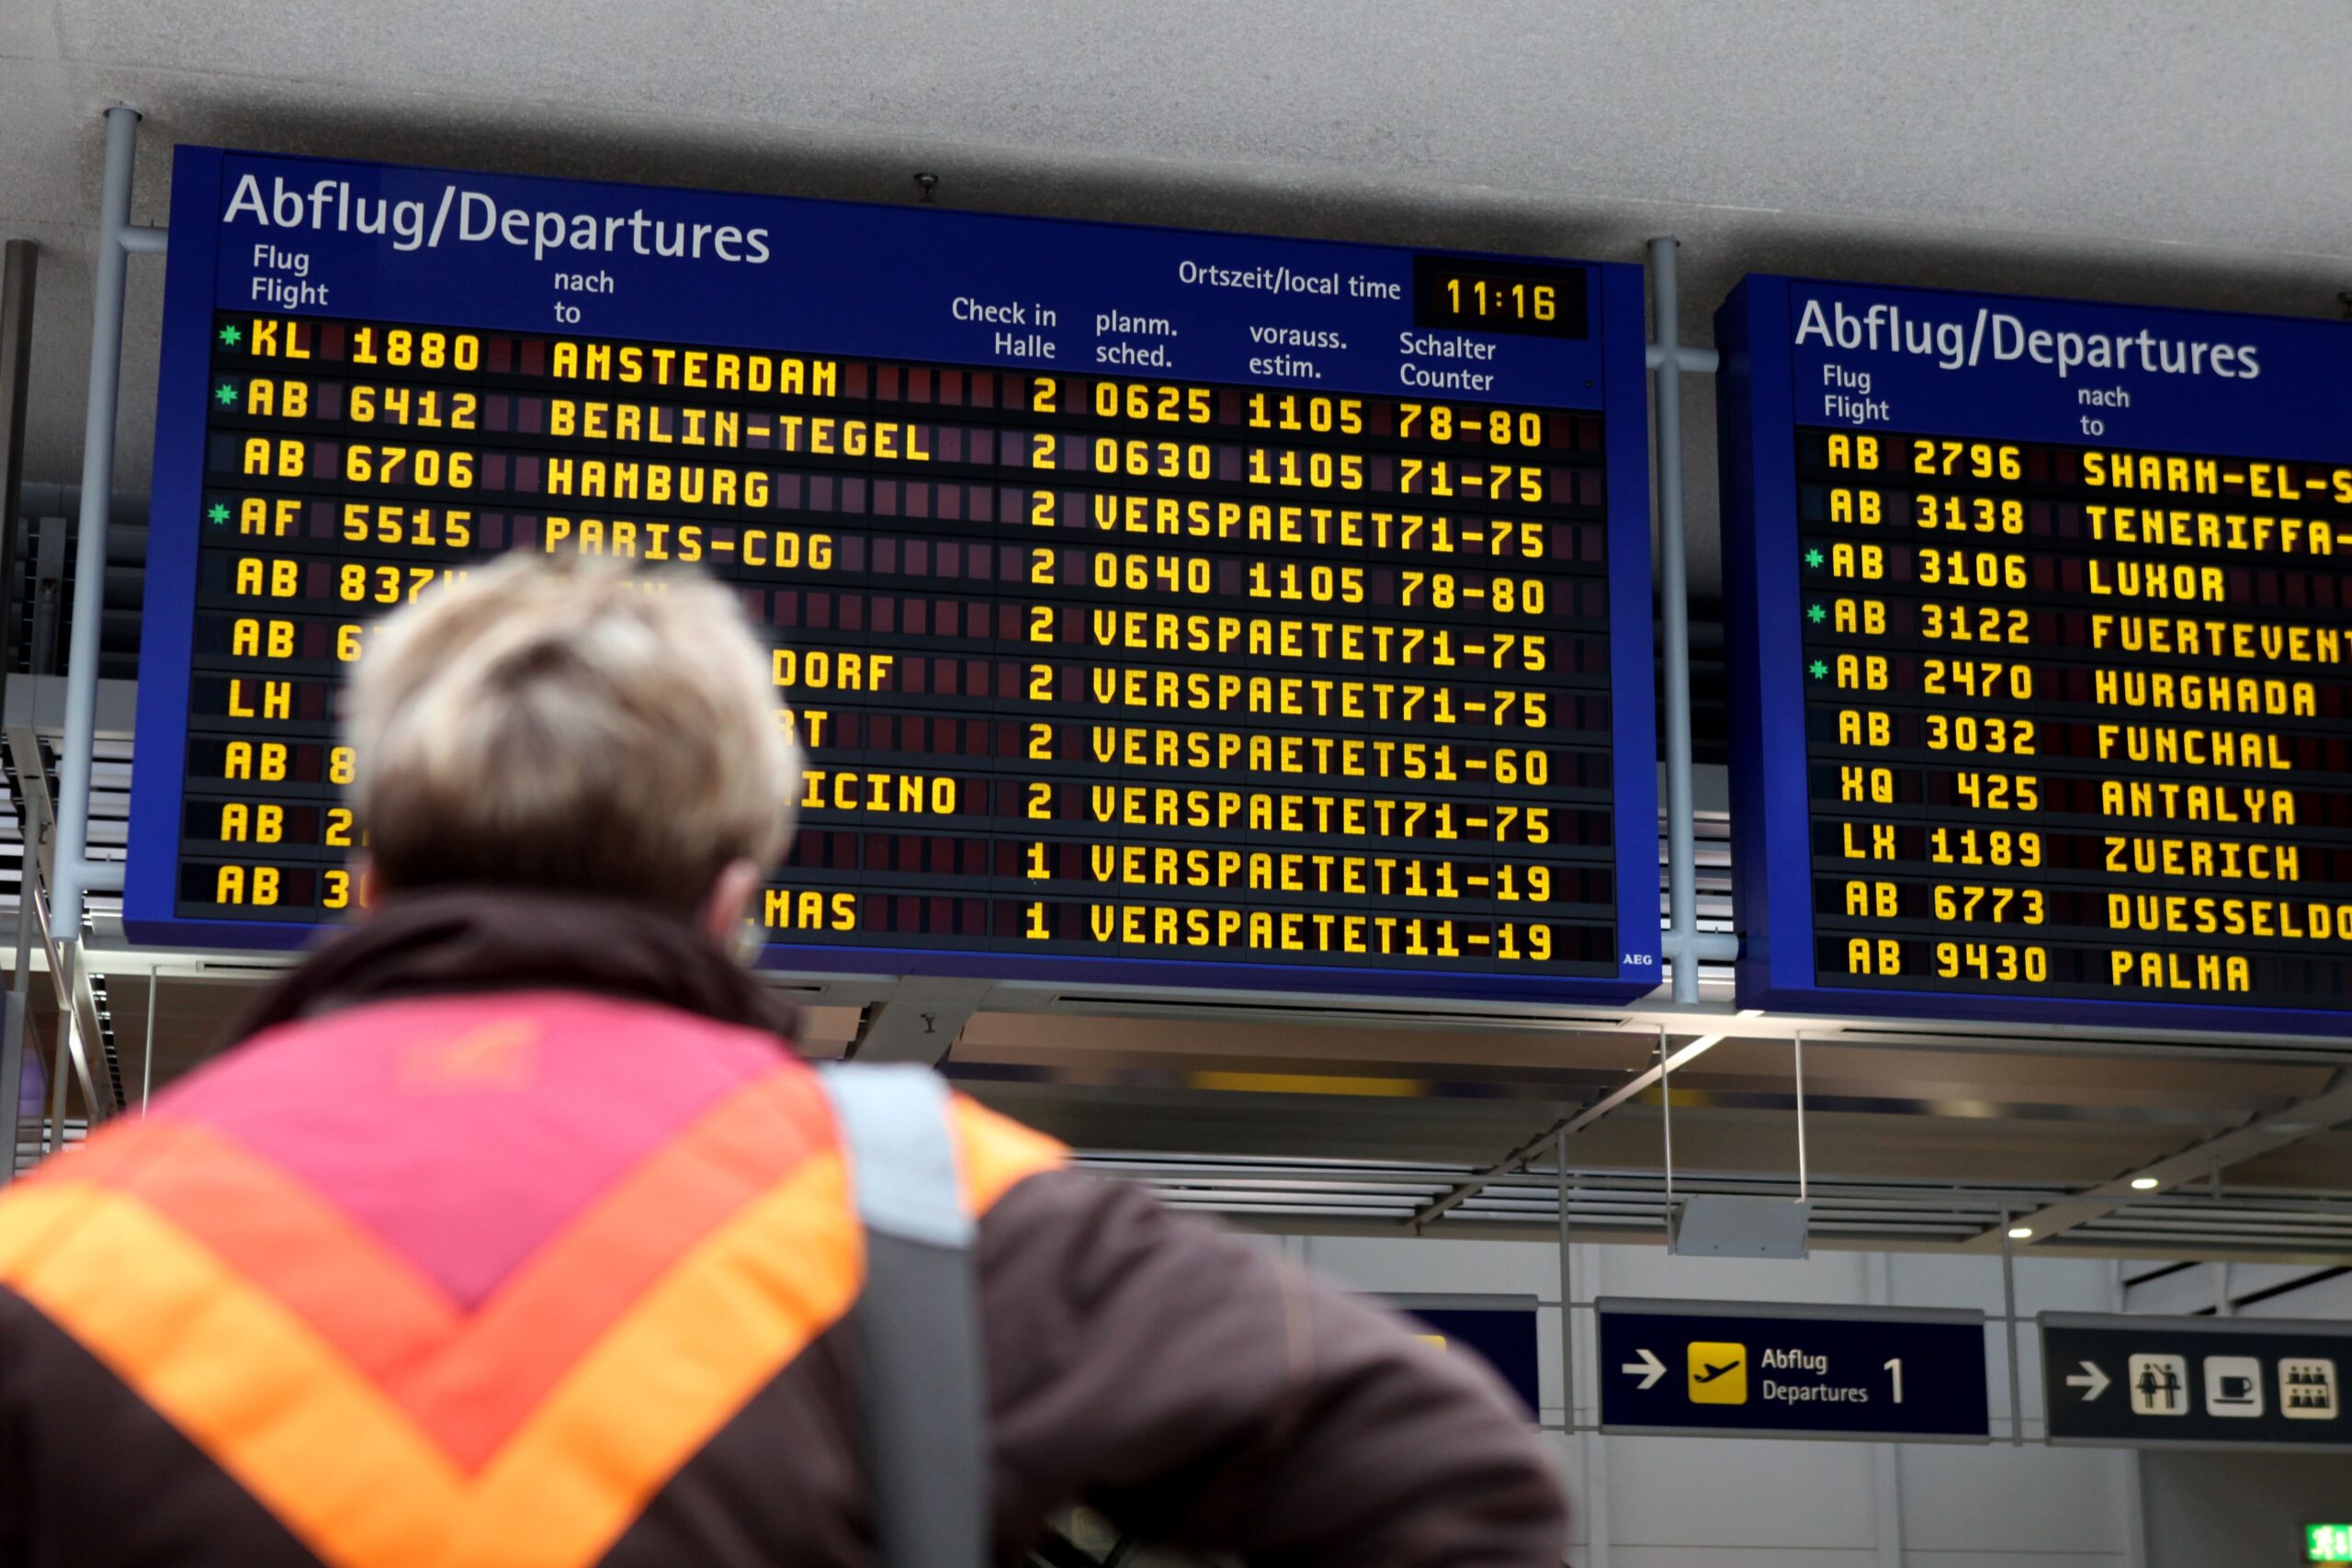 Flugtafel zeigt Flugausfälle und Verspätungen an. Welche Rechte haben Fluggäste in solchen Fällen?